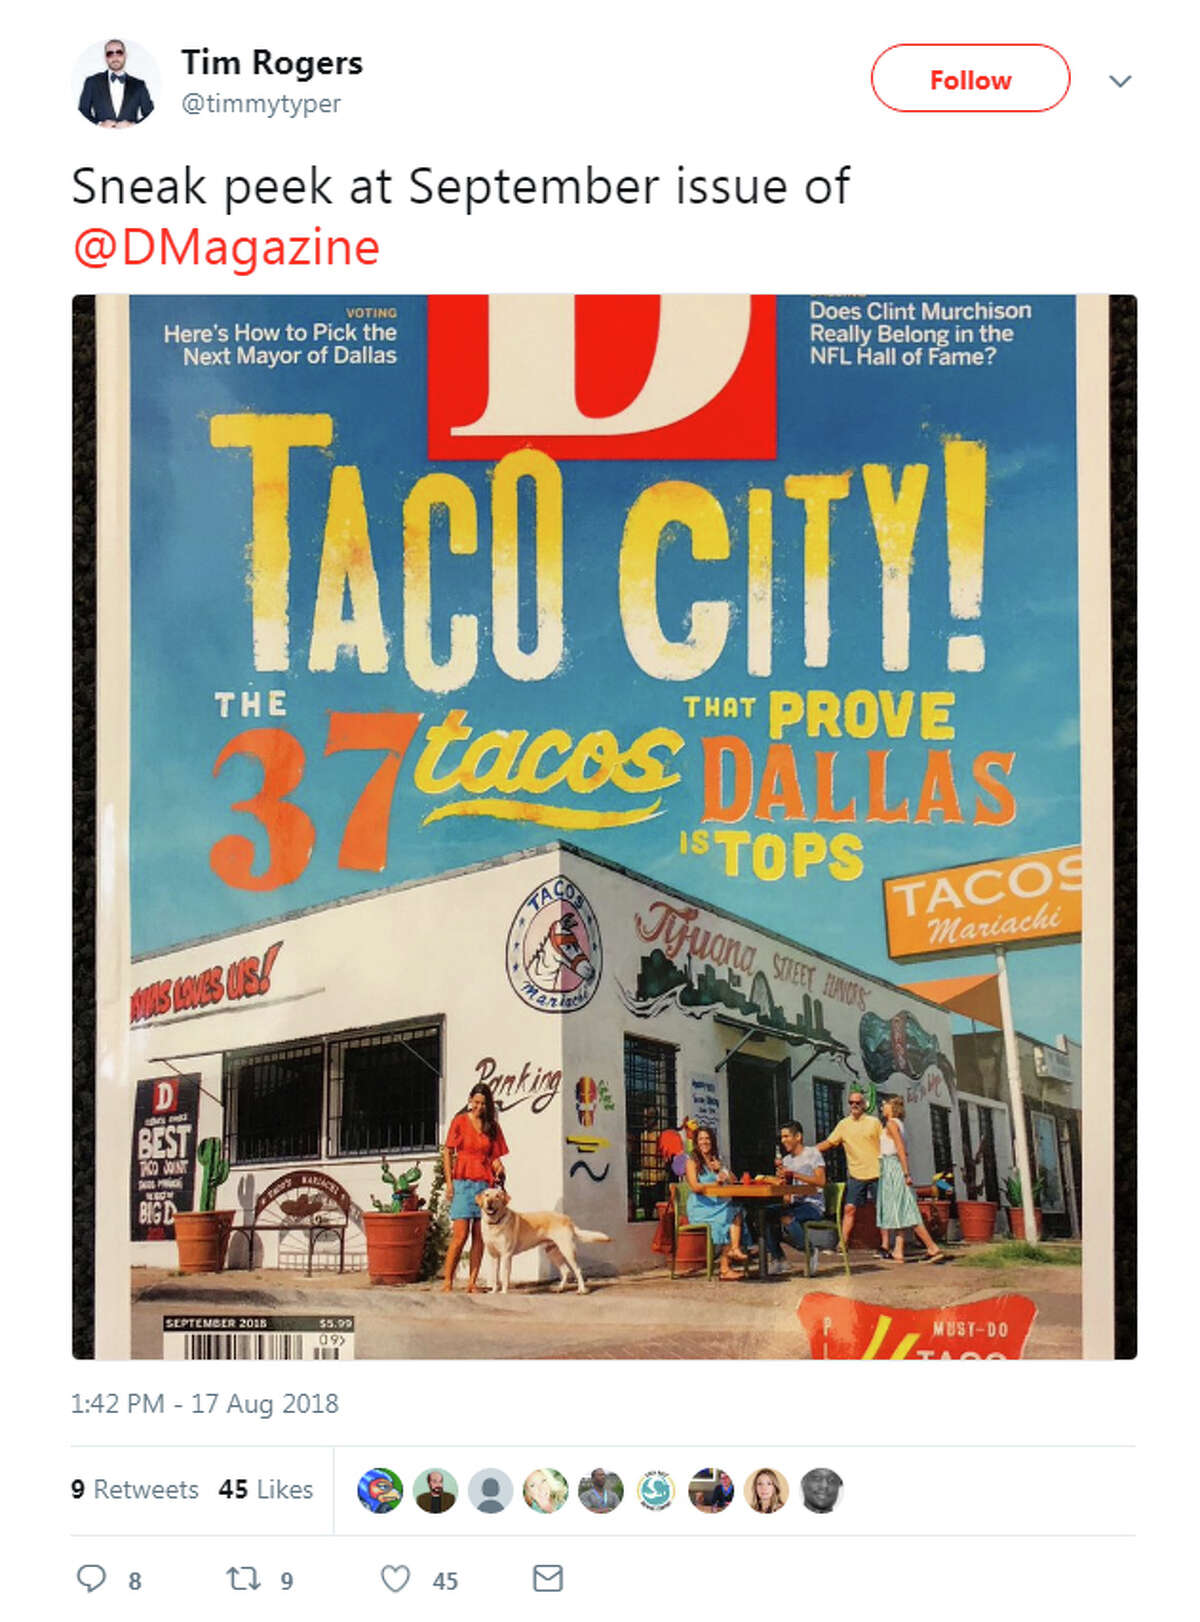 @timmytyper: "Sneak peek at September issue of @DMagazine"